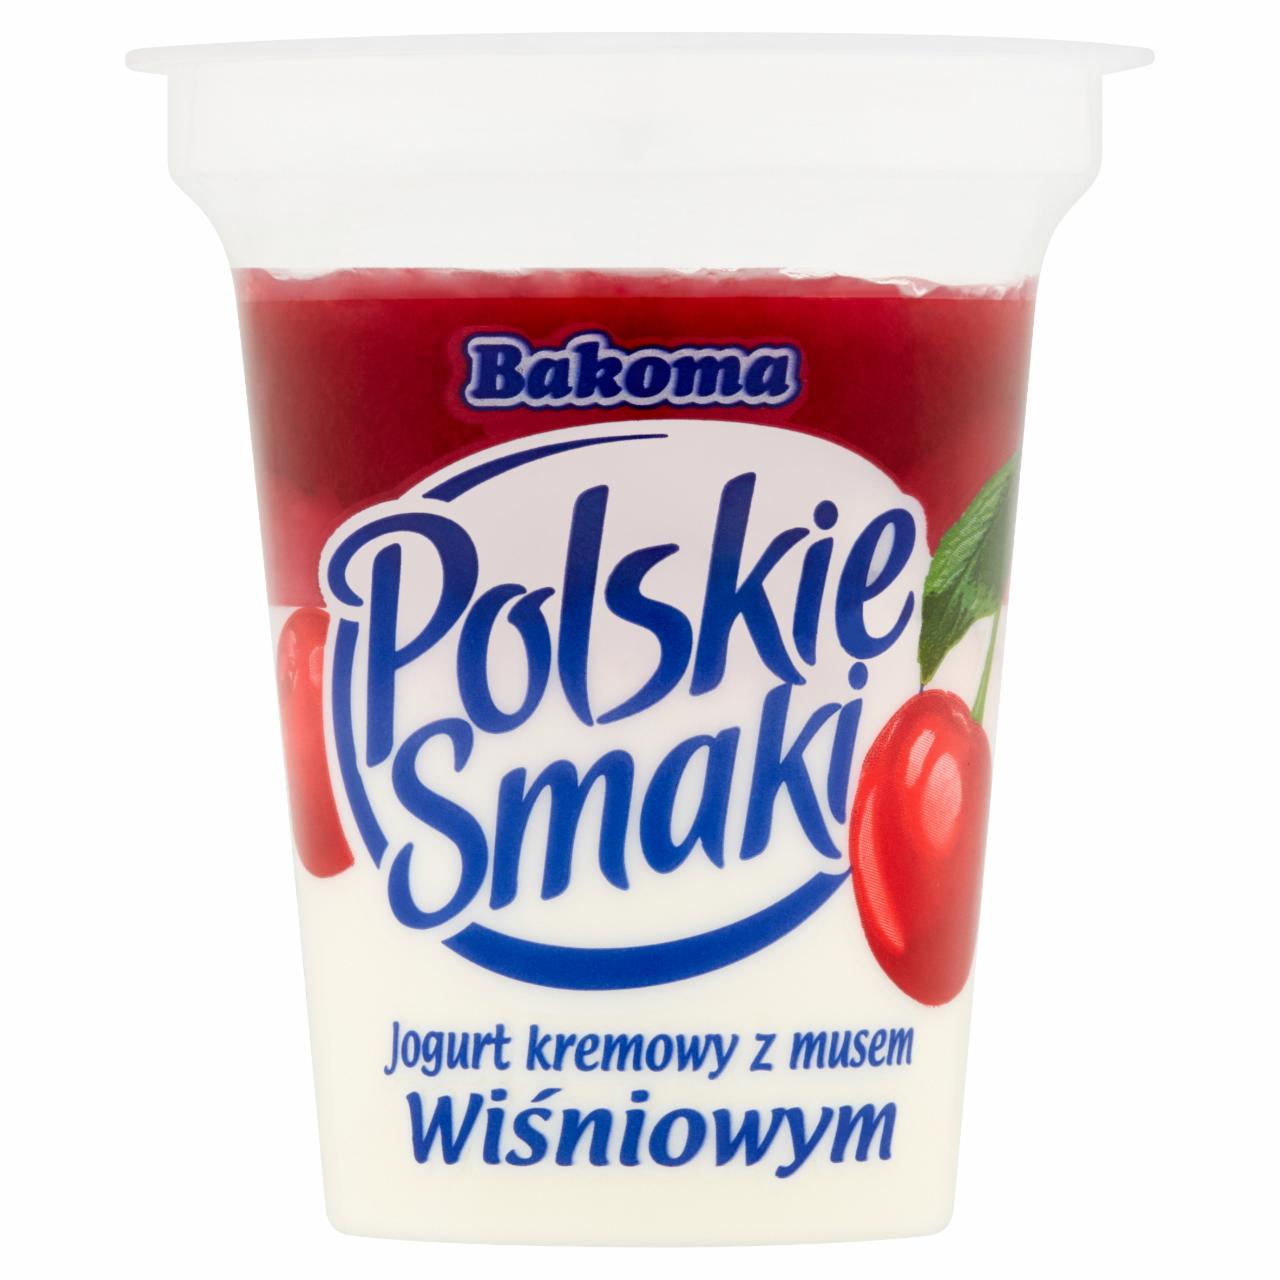 Zdjęcia - Bakoma Polskie Smaki Jogurt kremowy z musem wiśniowym 120 g